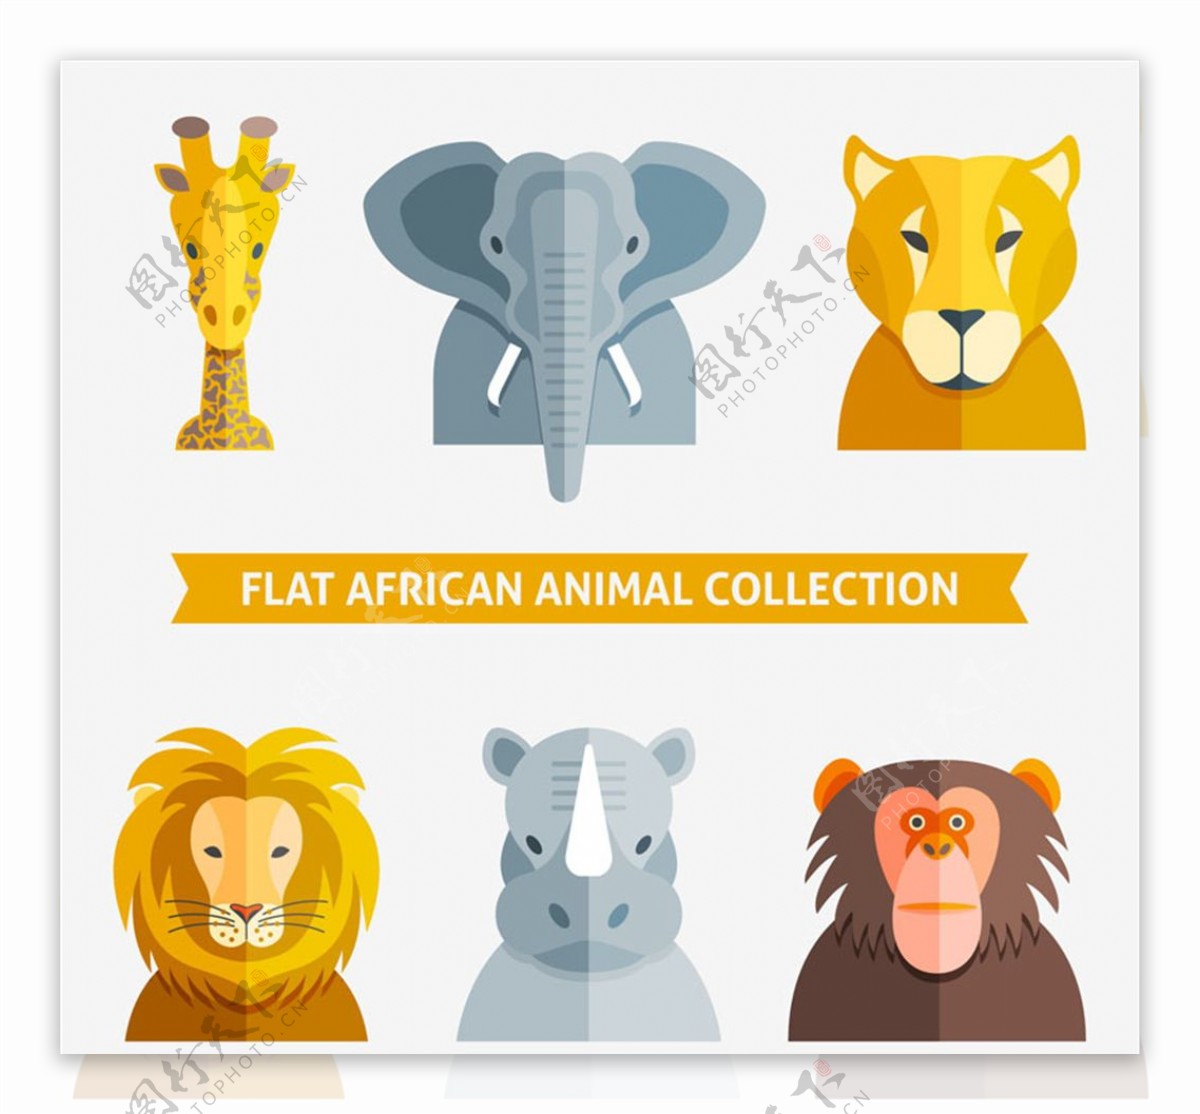 扁平化非洲动物头像矢量素材